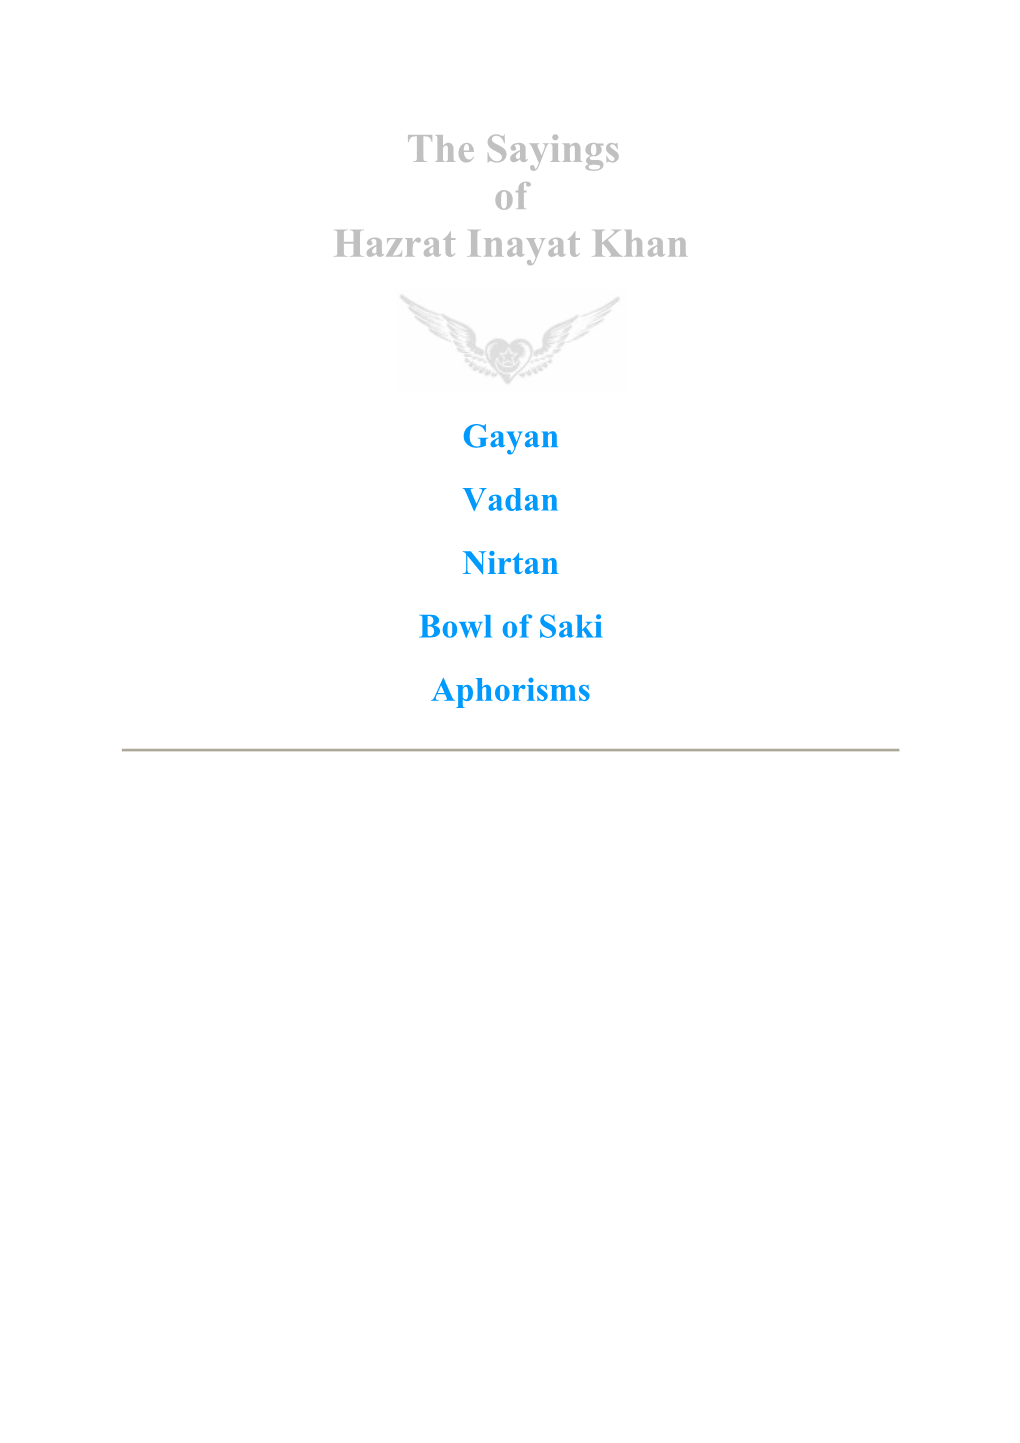 The Sayings of Hazrat Inayat Khan